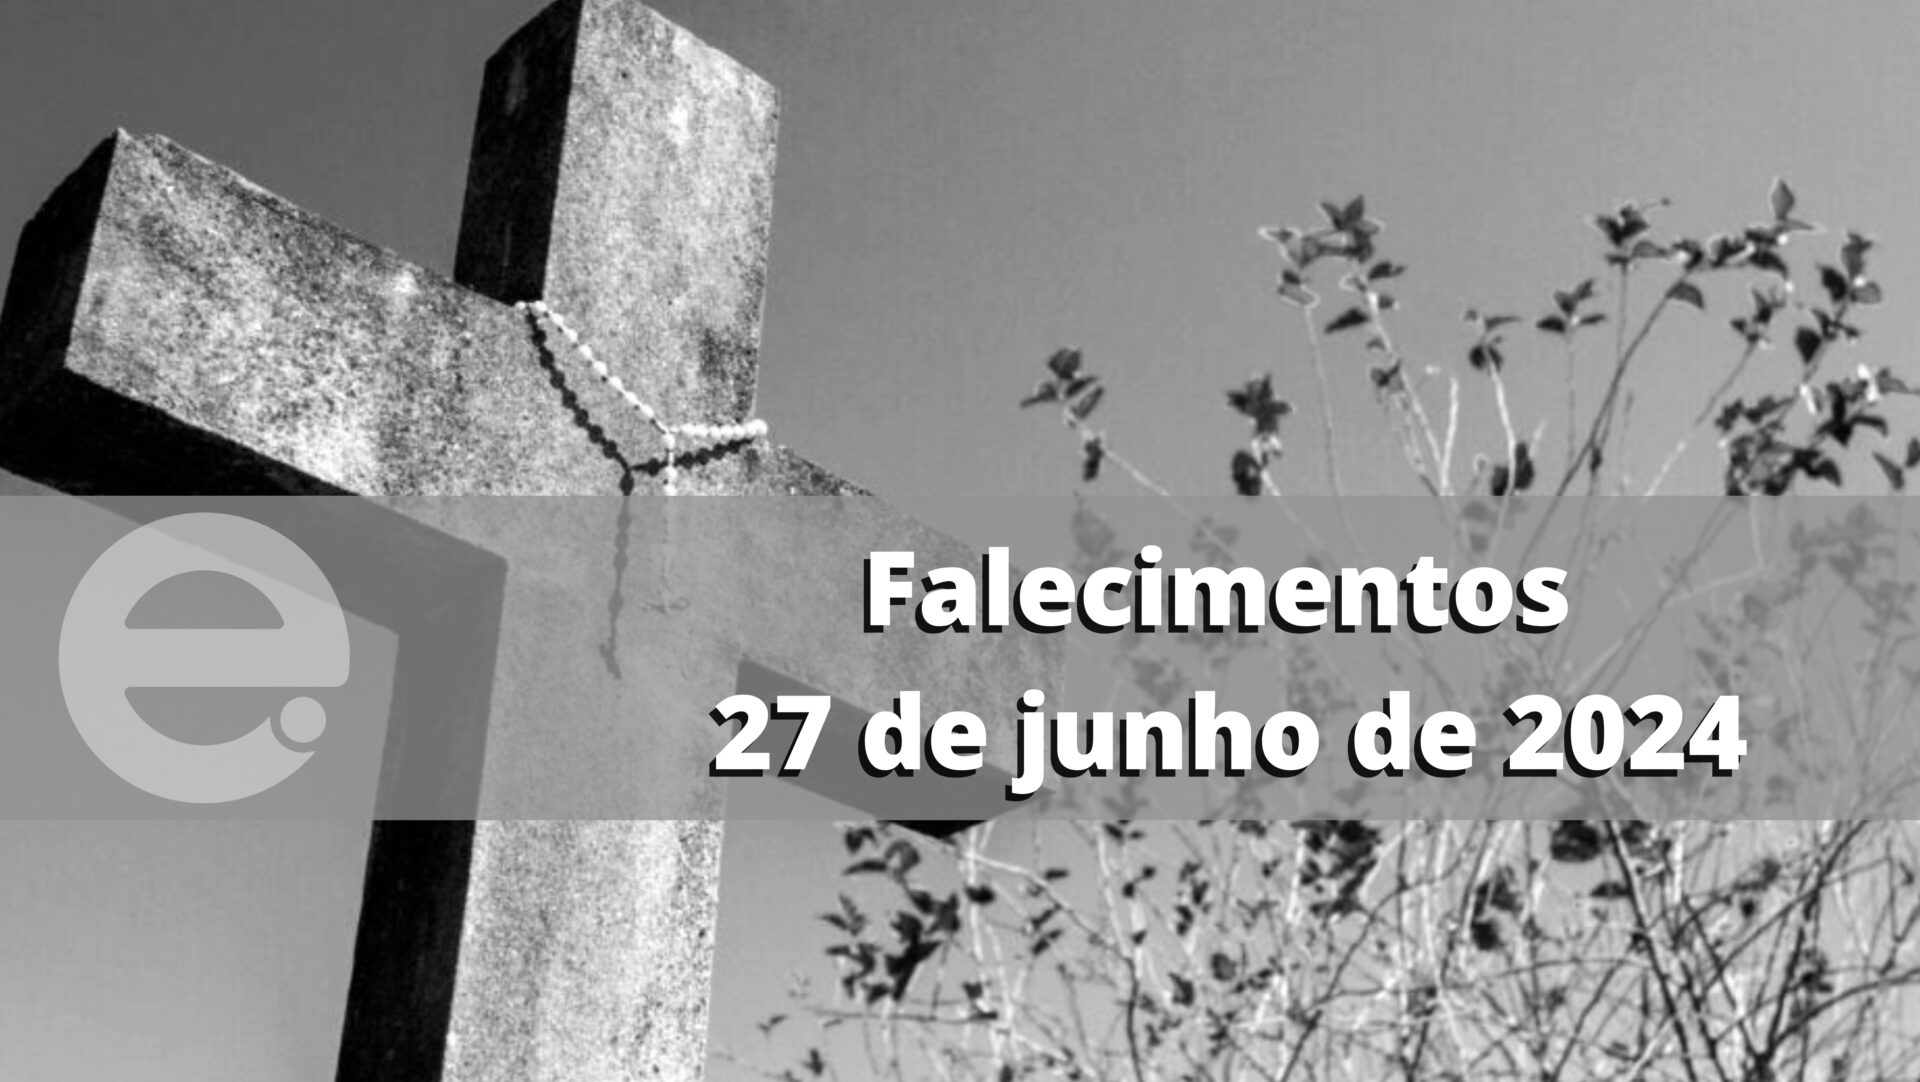 Confira os falecimentos desta quinta-feira, 27 de junho de 2024, em Limeira